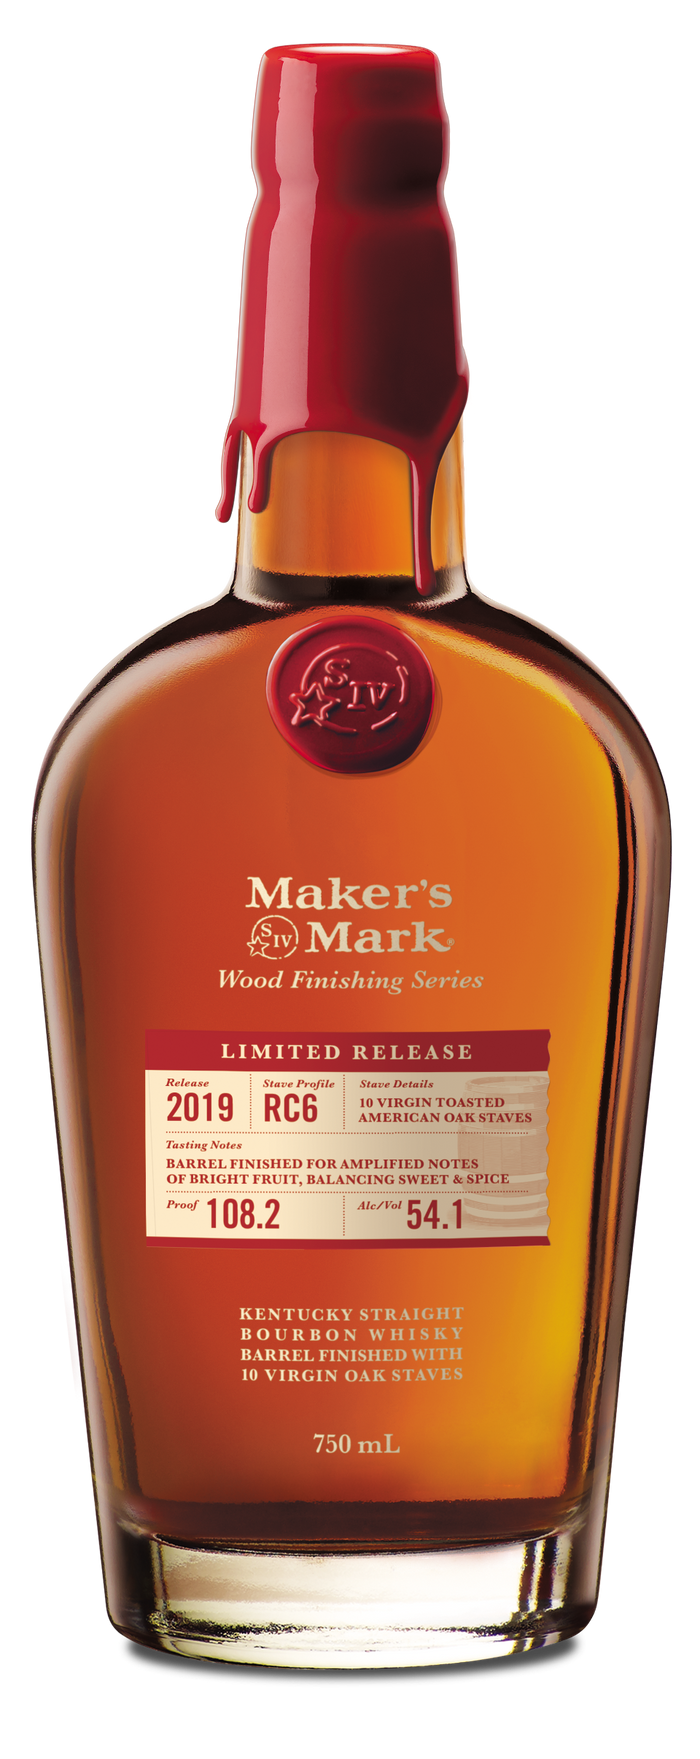 Maker's Mark Wood Finishing Series Straight Bourbon Whiskey